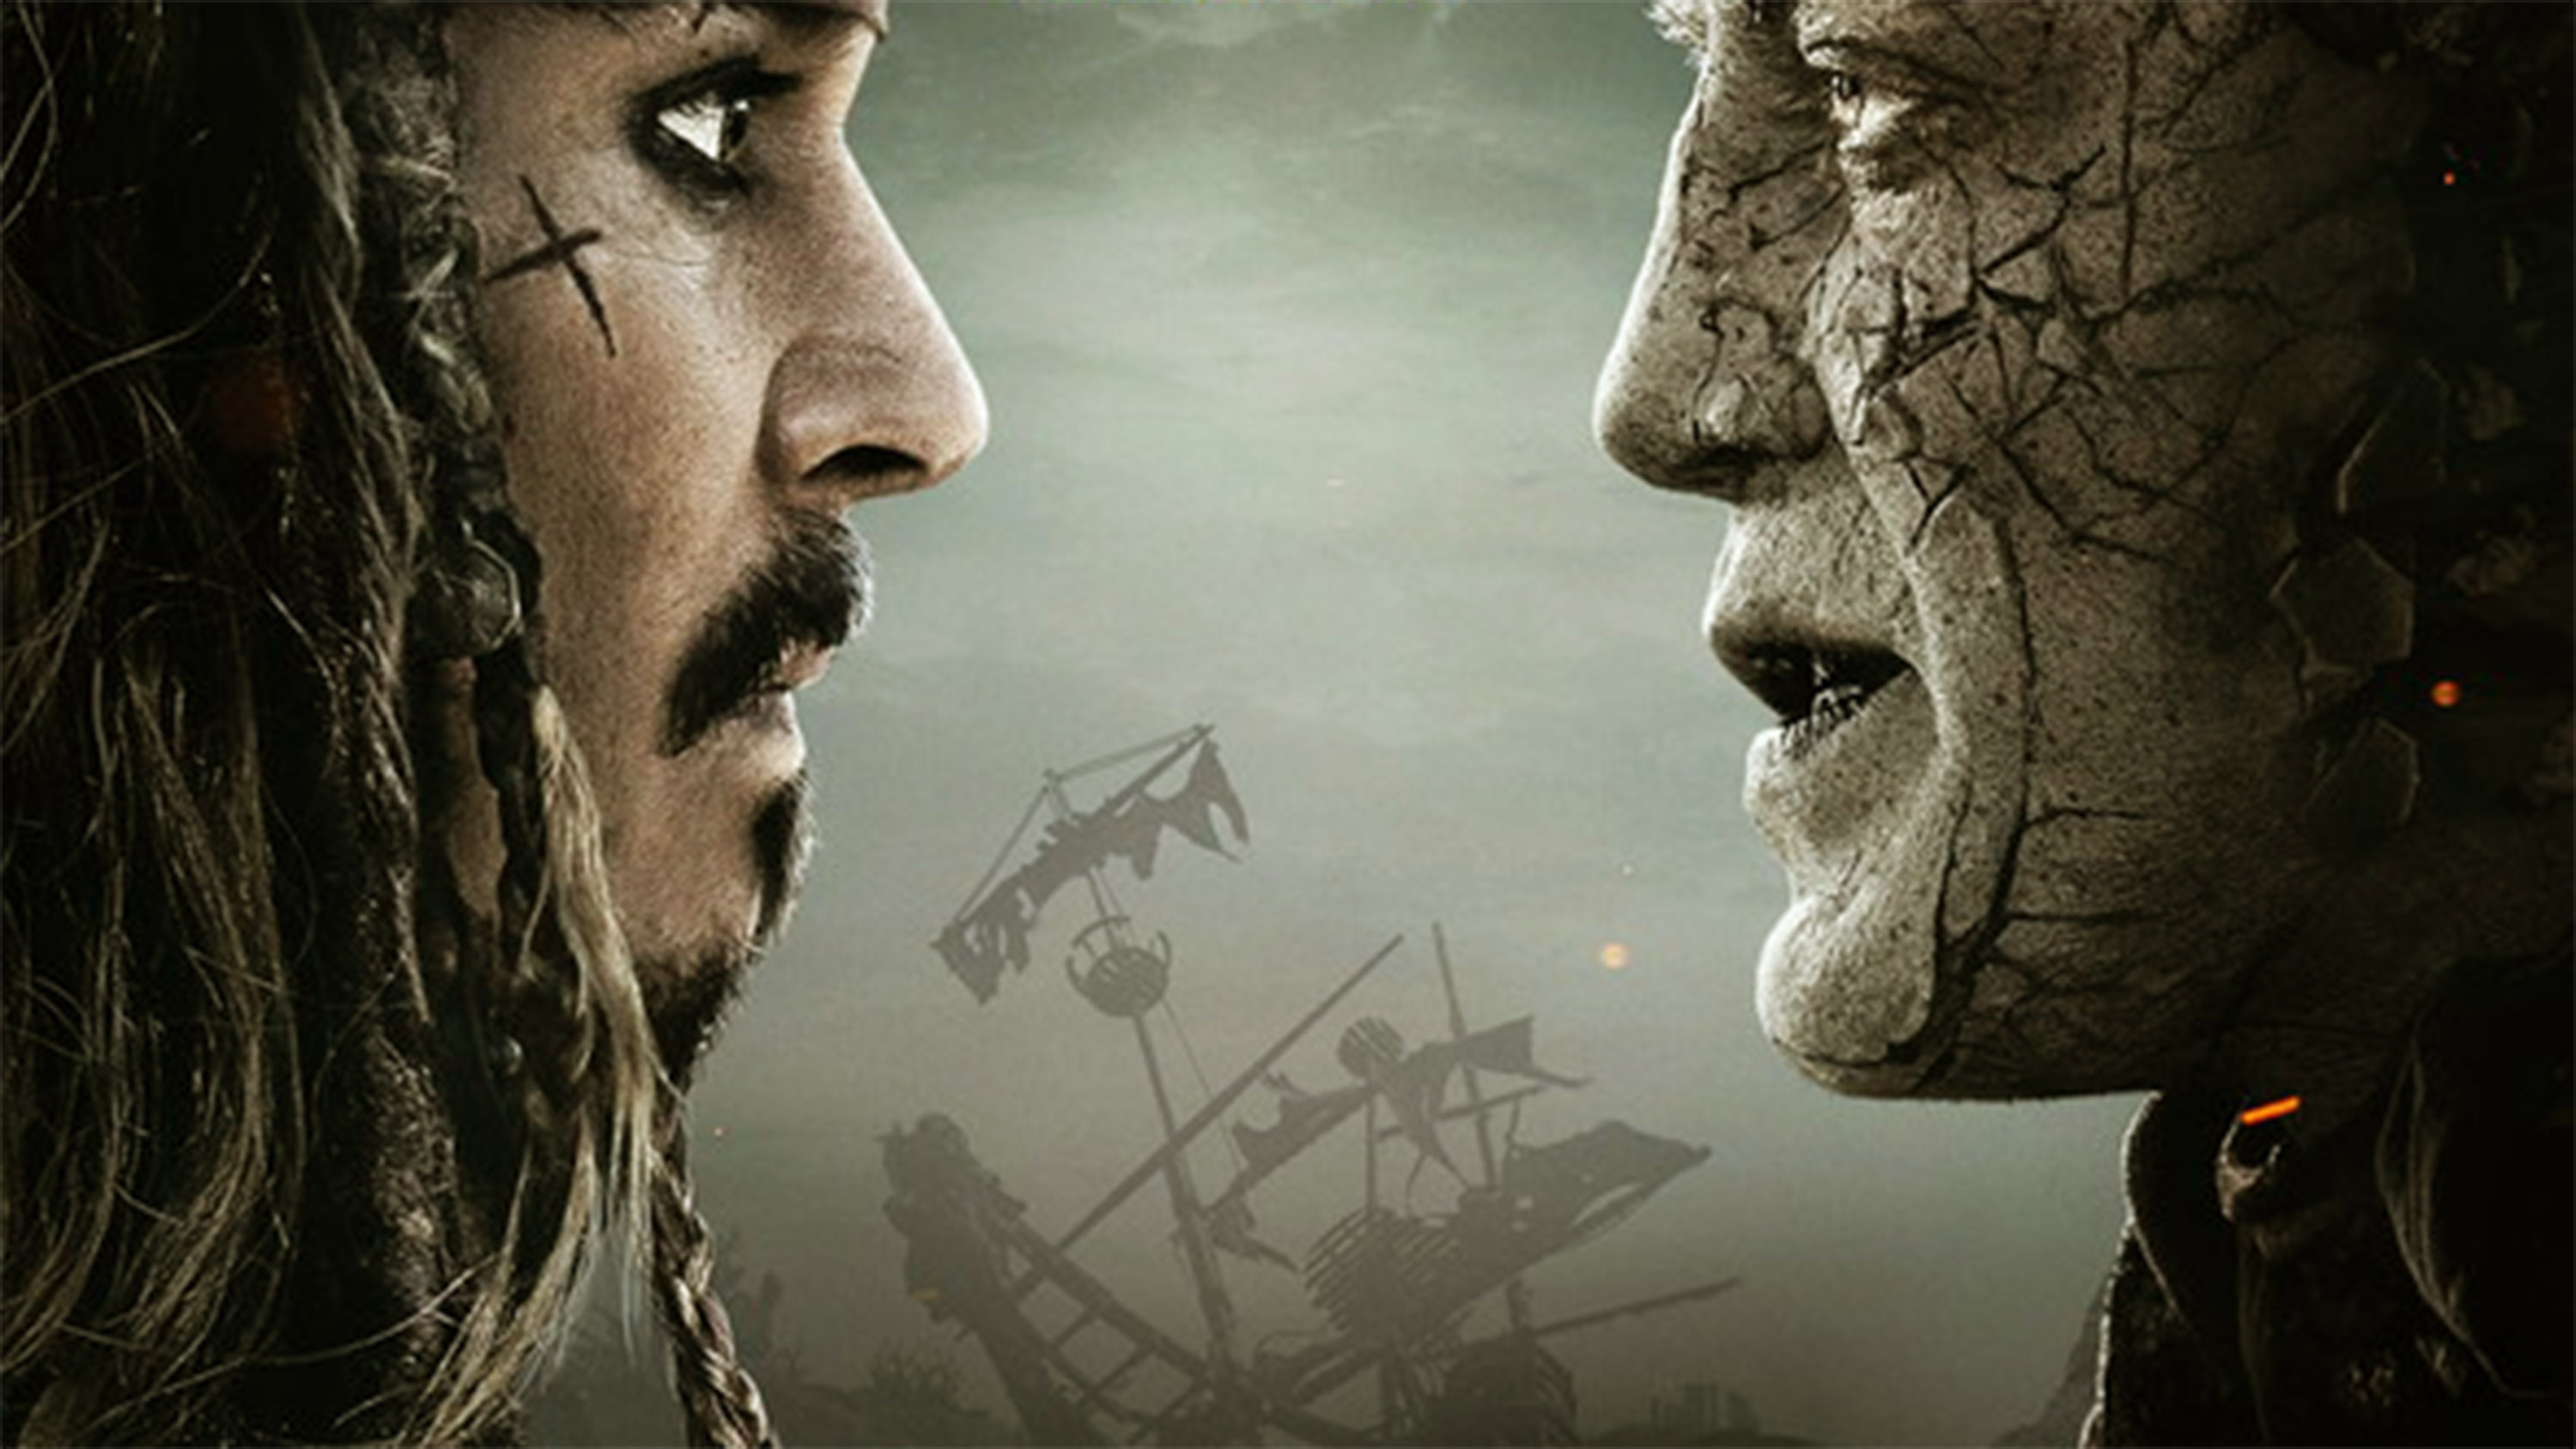 “Pirates of the Carribean” a.k.a. “Fluch der Karibik” geht weiter! Am 25. Mai startet „Pirates of the Carribean – Salazars Rache” in den Kinos. Hier erfährst du alles, was du über das Franchise rund um Jack Sparrow wissen musst.